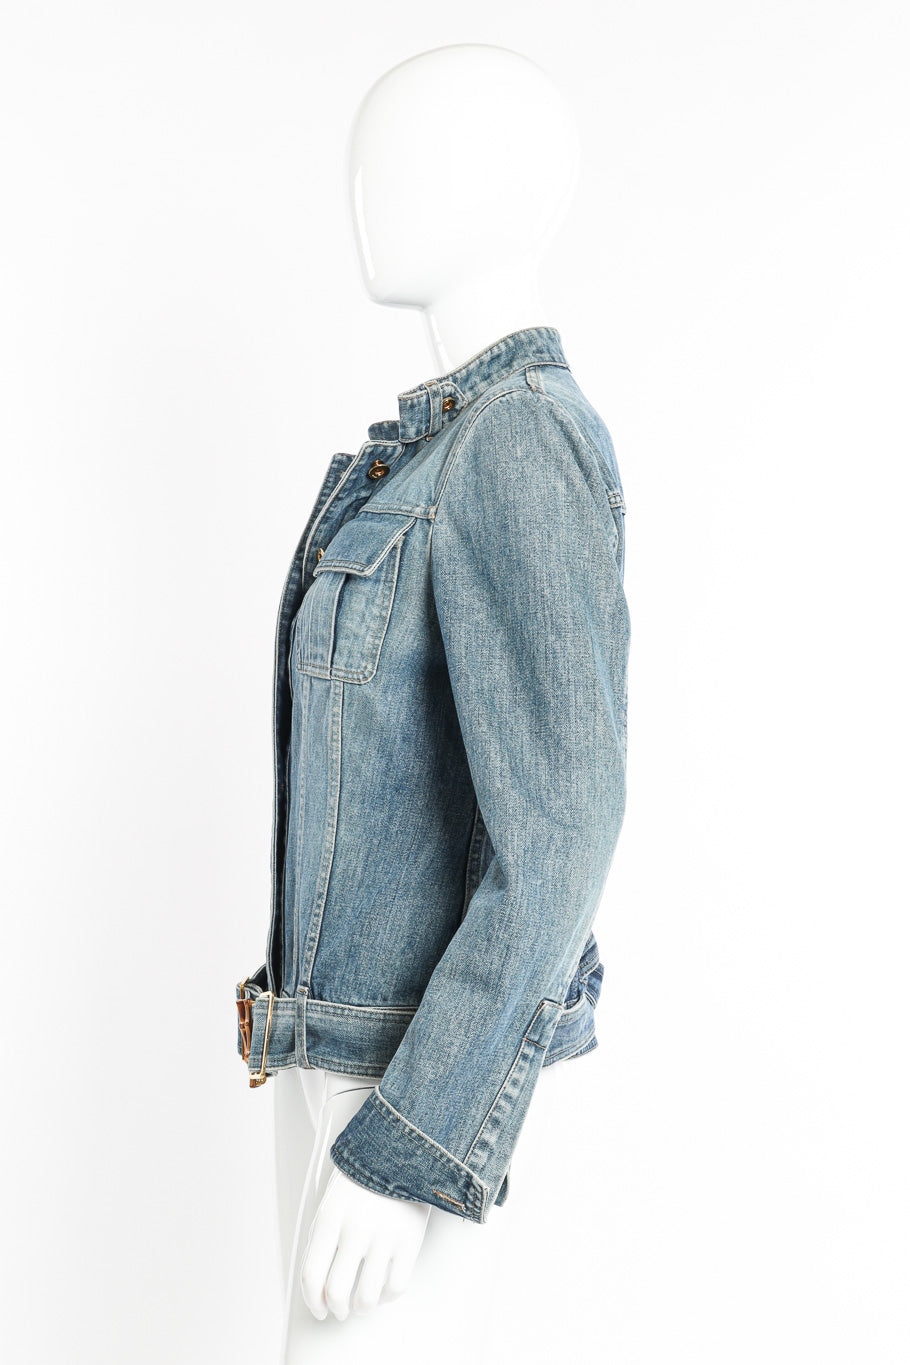 Bamboo Belt Denim Jacket by Gucci on mannequin side @recessla